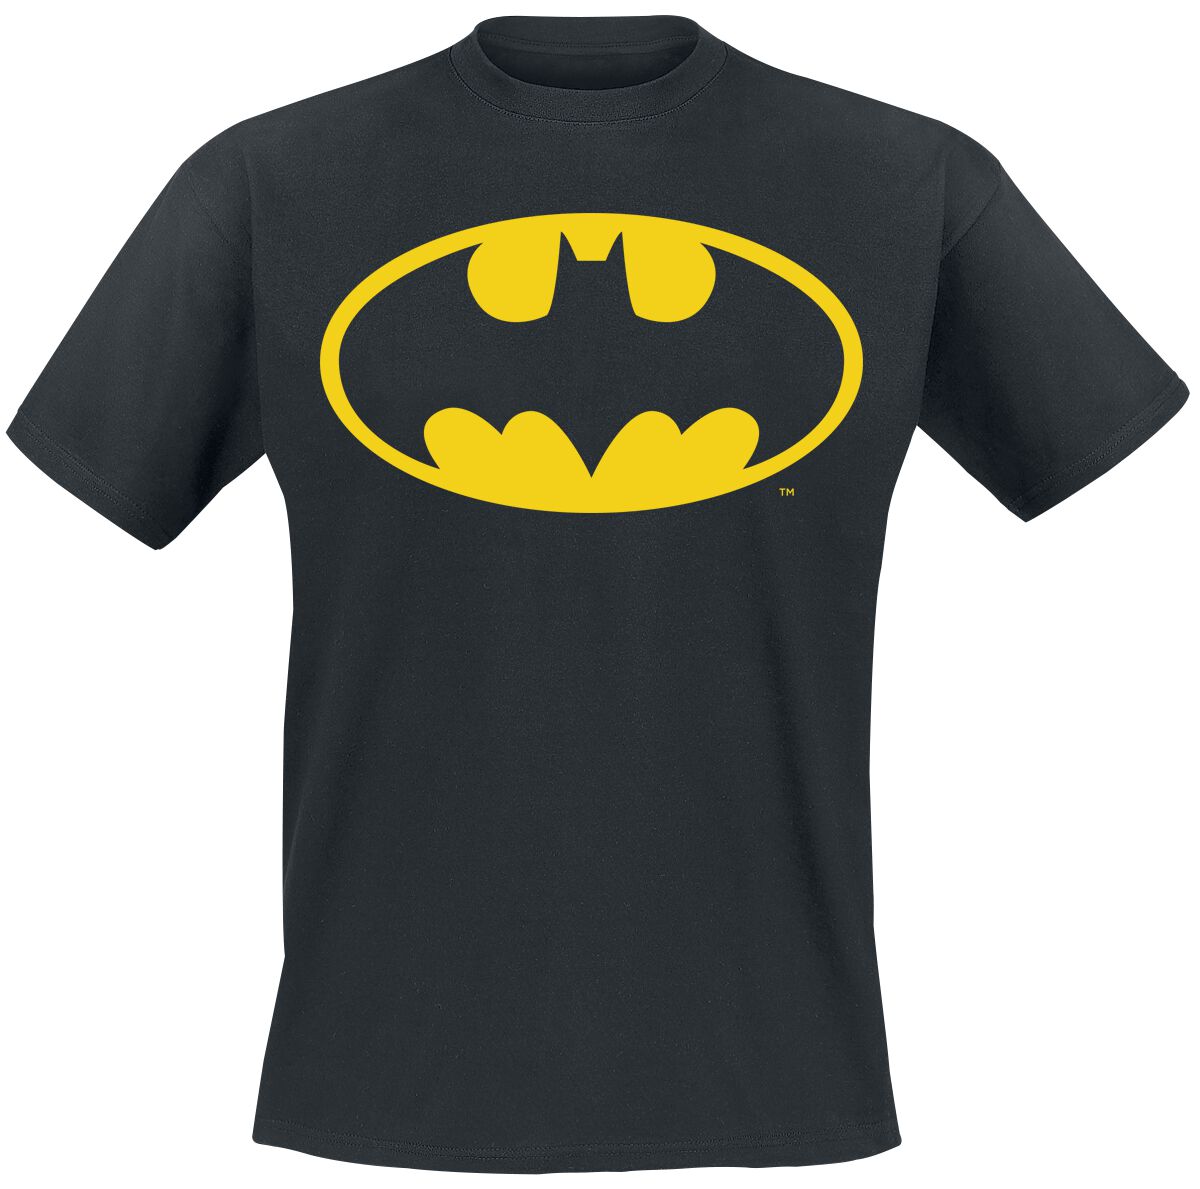 Batman - DC Comics T-Shirt - Classic Logo - S bis 4XL - für Männer - Größe M - schwarz  - EMP exklusives Merchandise!